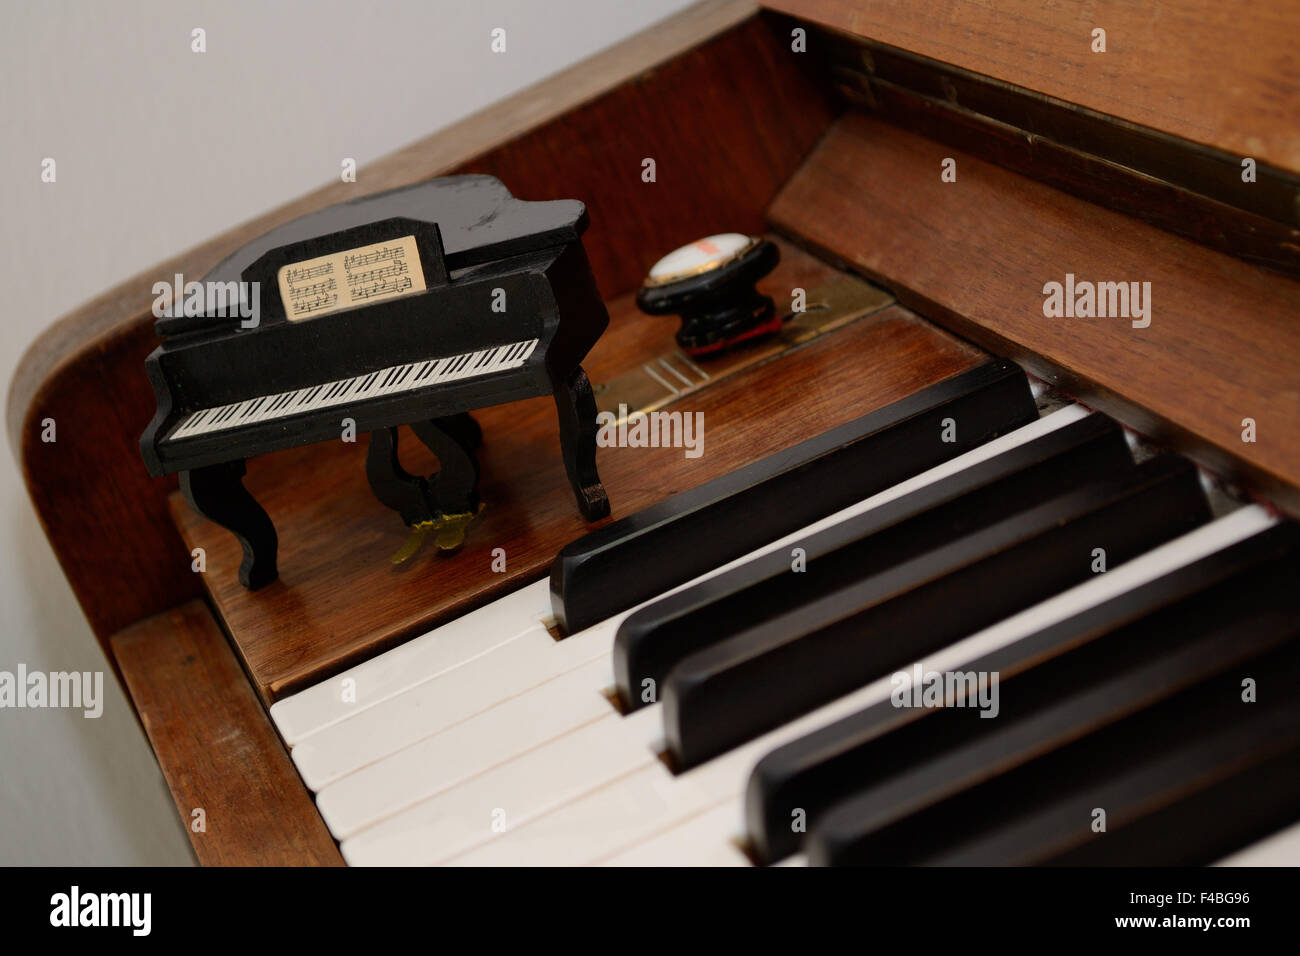 Mini piano at the big piano Stock Photo